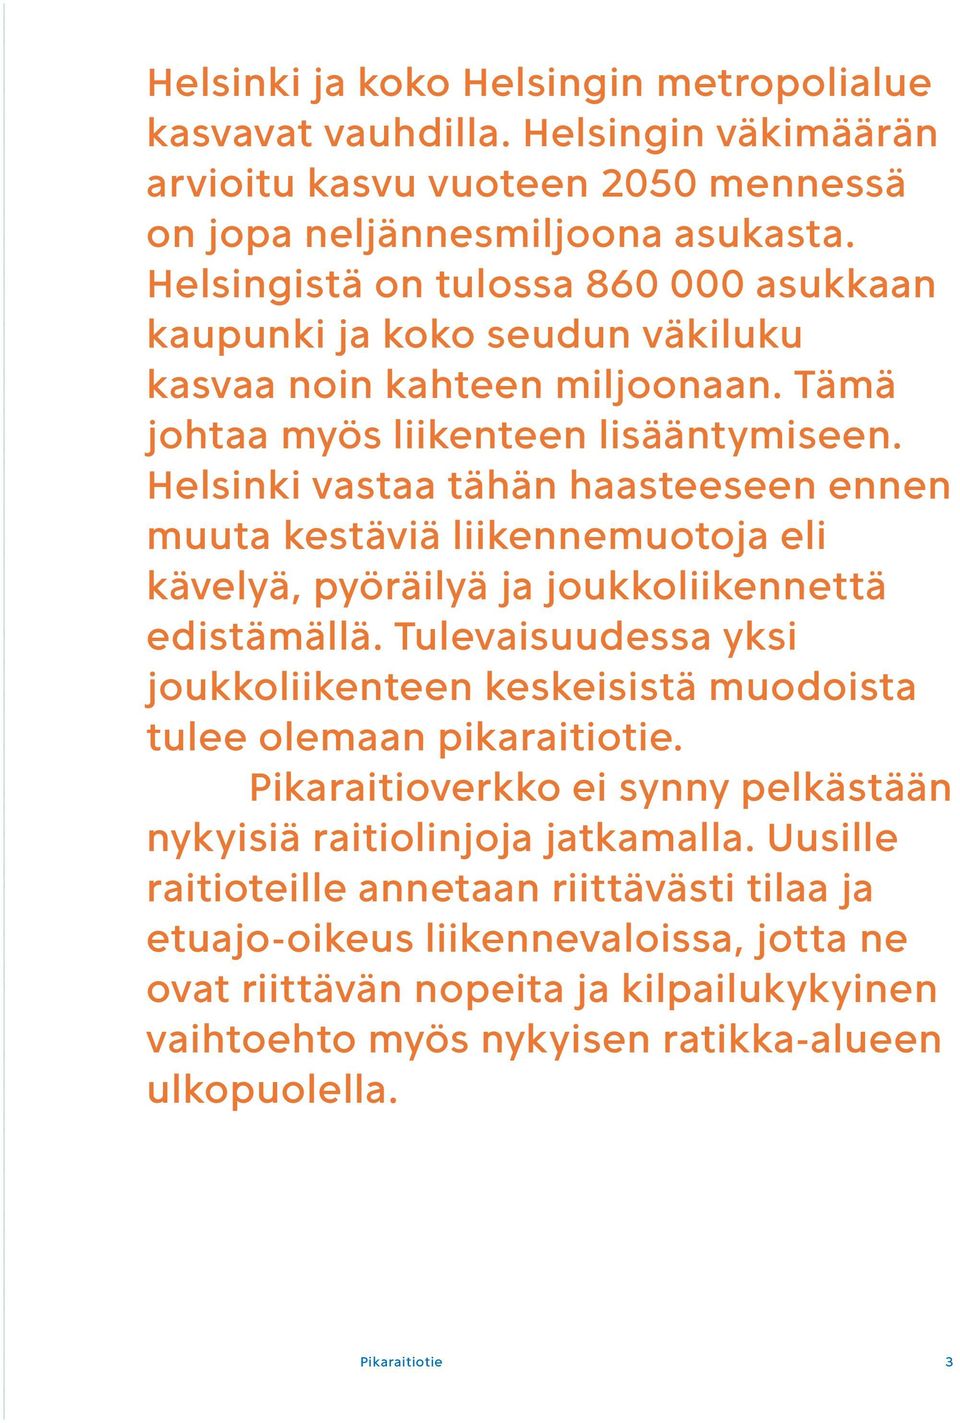 Helsinki vastaa tähän haasteeseen ennen muuta kestäviä liikennemuotoja eli kävelyä, pyöräilyä ja joukkoliikennettä edistämällä.